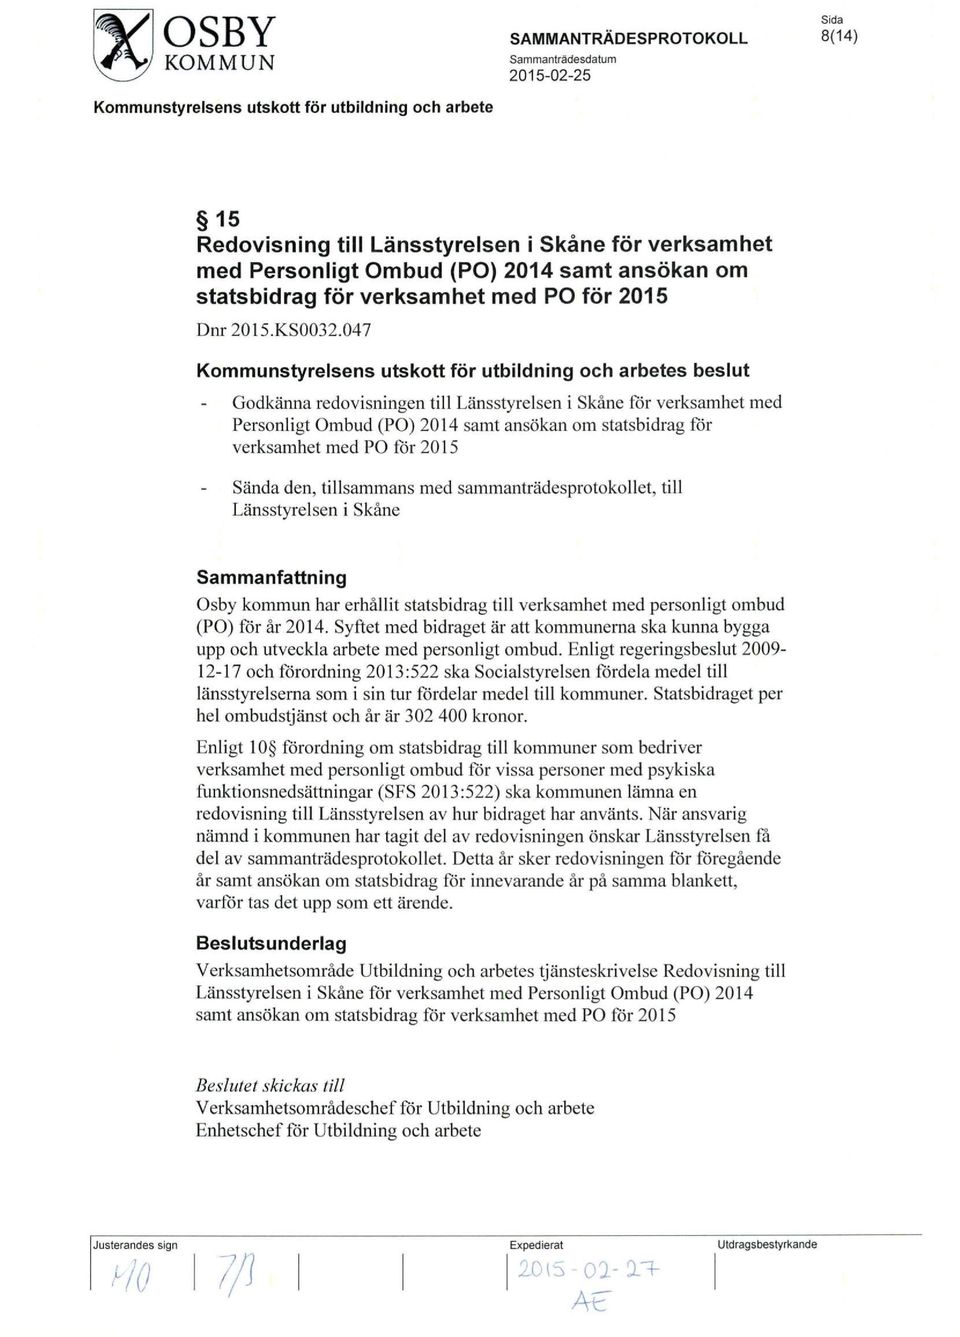 sammantradesprotokollet, till Lansstyrelsen i Skane Osby kommun har erhallit statsbidrag till verksamhet med personligt ombud (PO) for ar 2014.